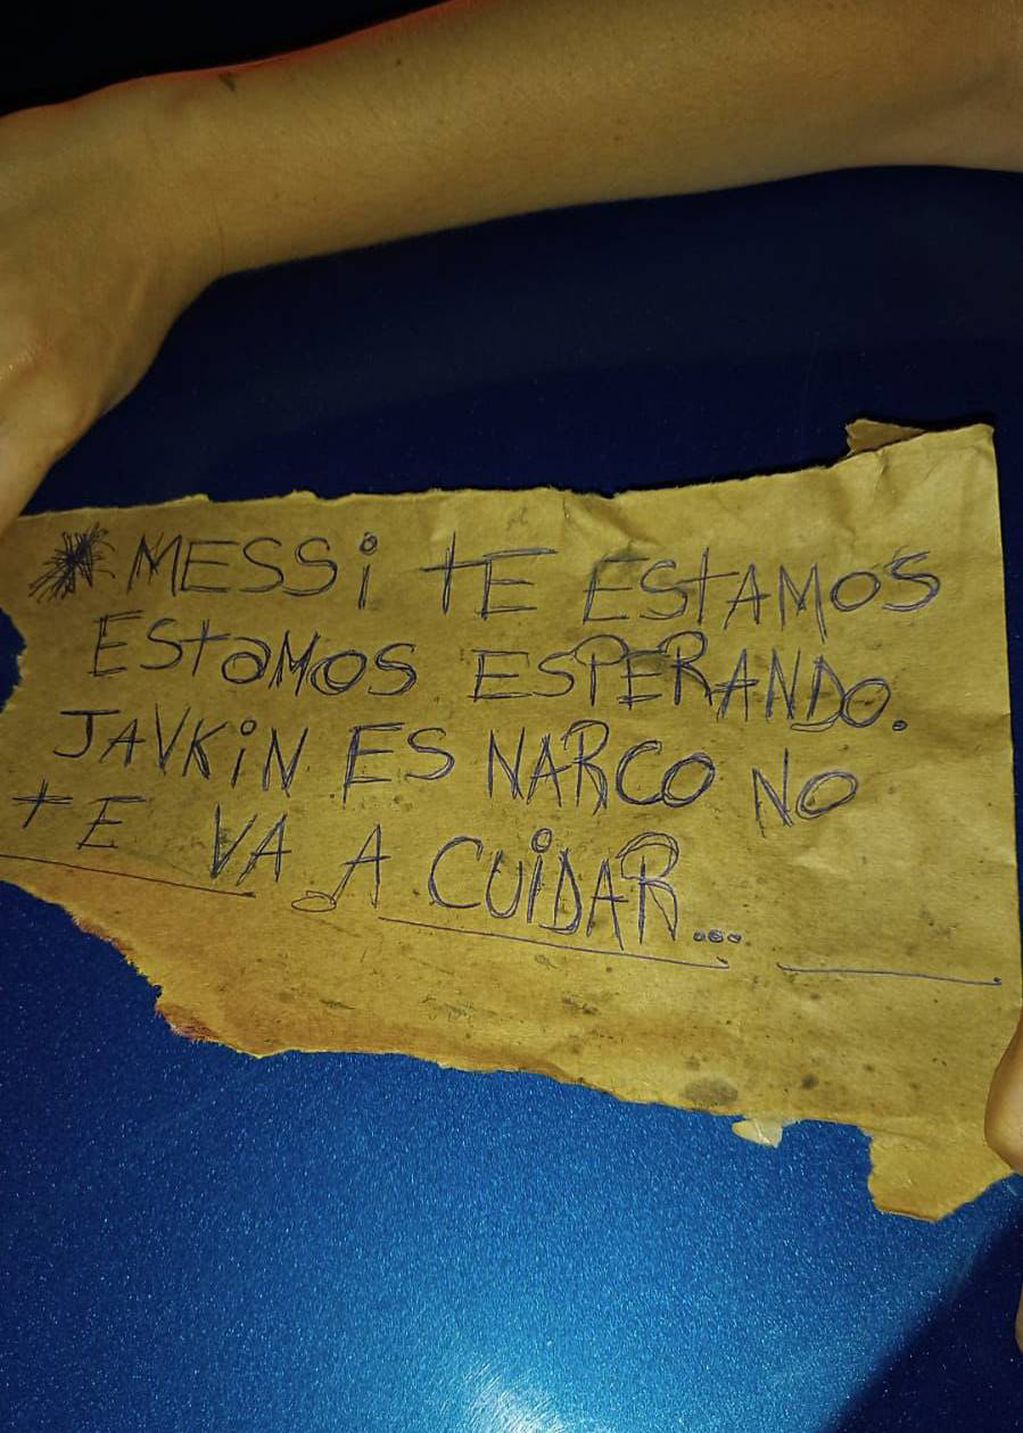 Una organización delictiva armó un cartel intimidatorio contra Messi a principios de 2023.